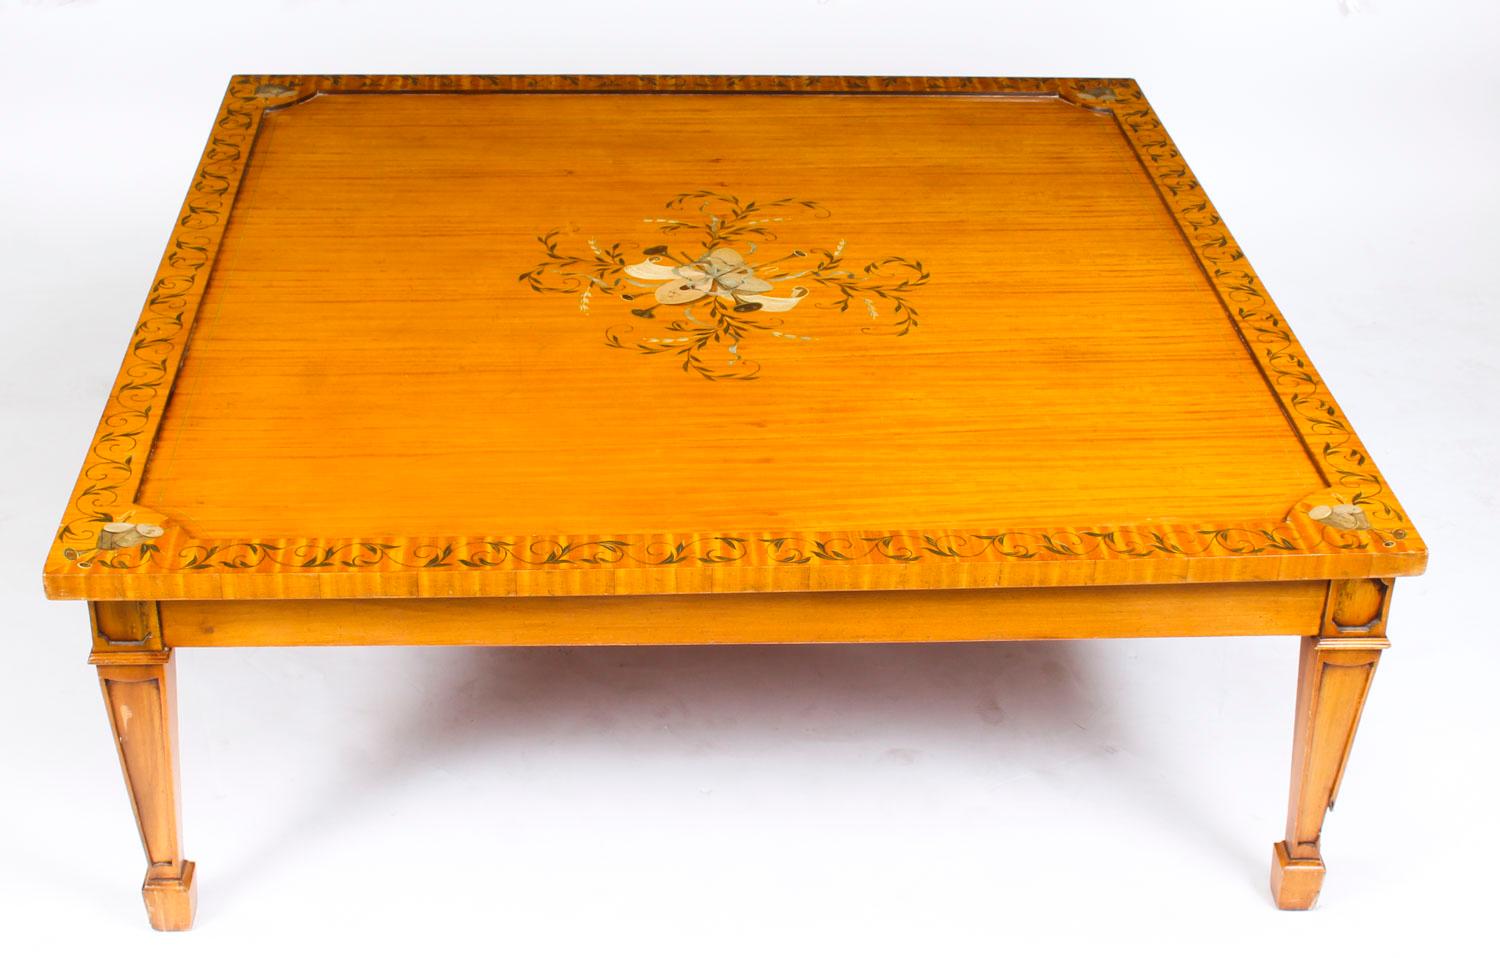 Il s'agit d'une grande et superbe table basse en bois de satin de style néo-Weraton, datant du milieu du 20e siècle.

Le plateau de table carré présente un décor peint à la manière d'Angelica Kauffman, mettant en scène des trophées et des